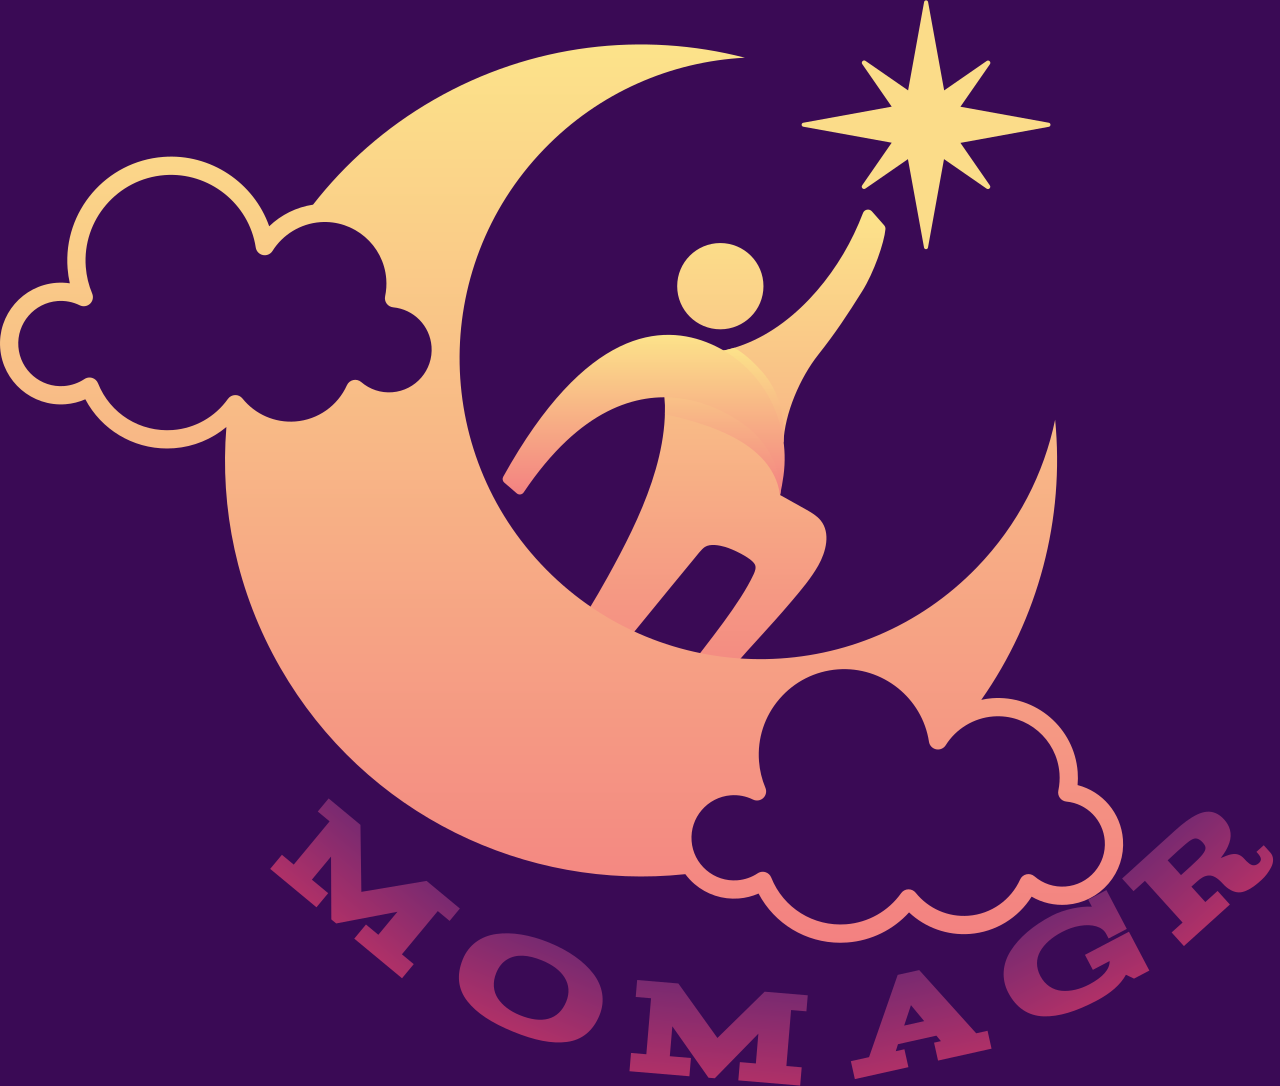 Momagr's logo